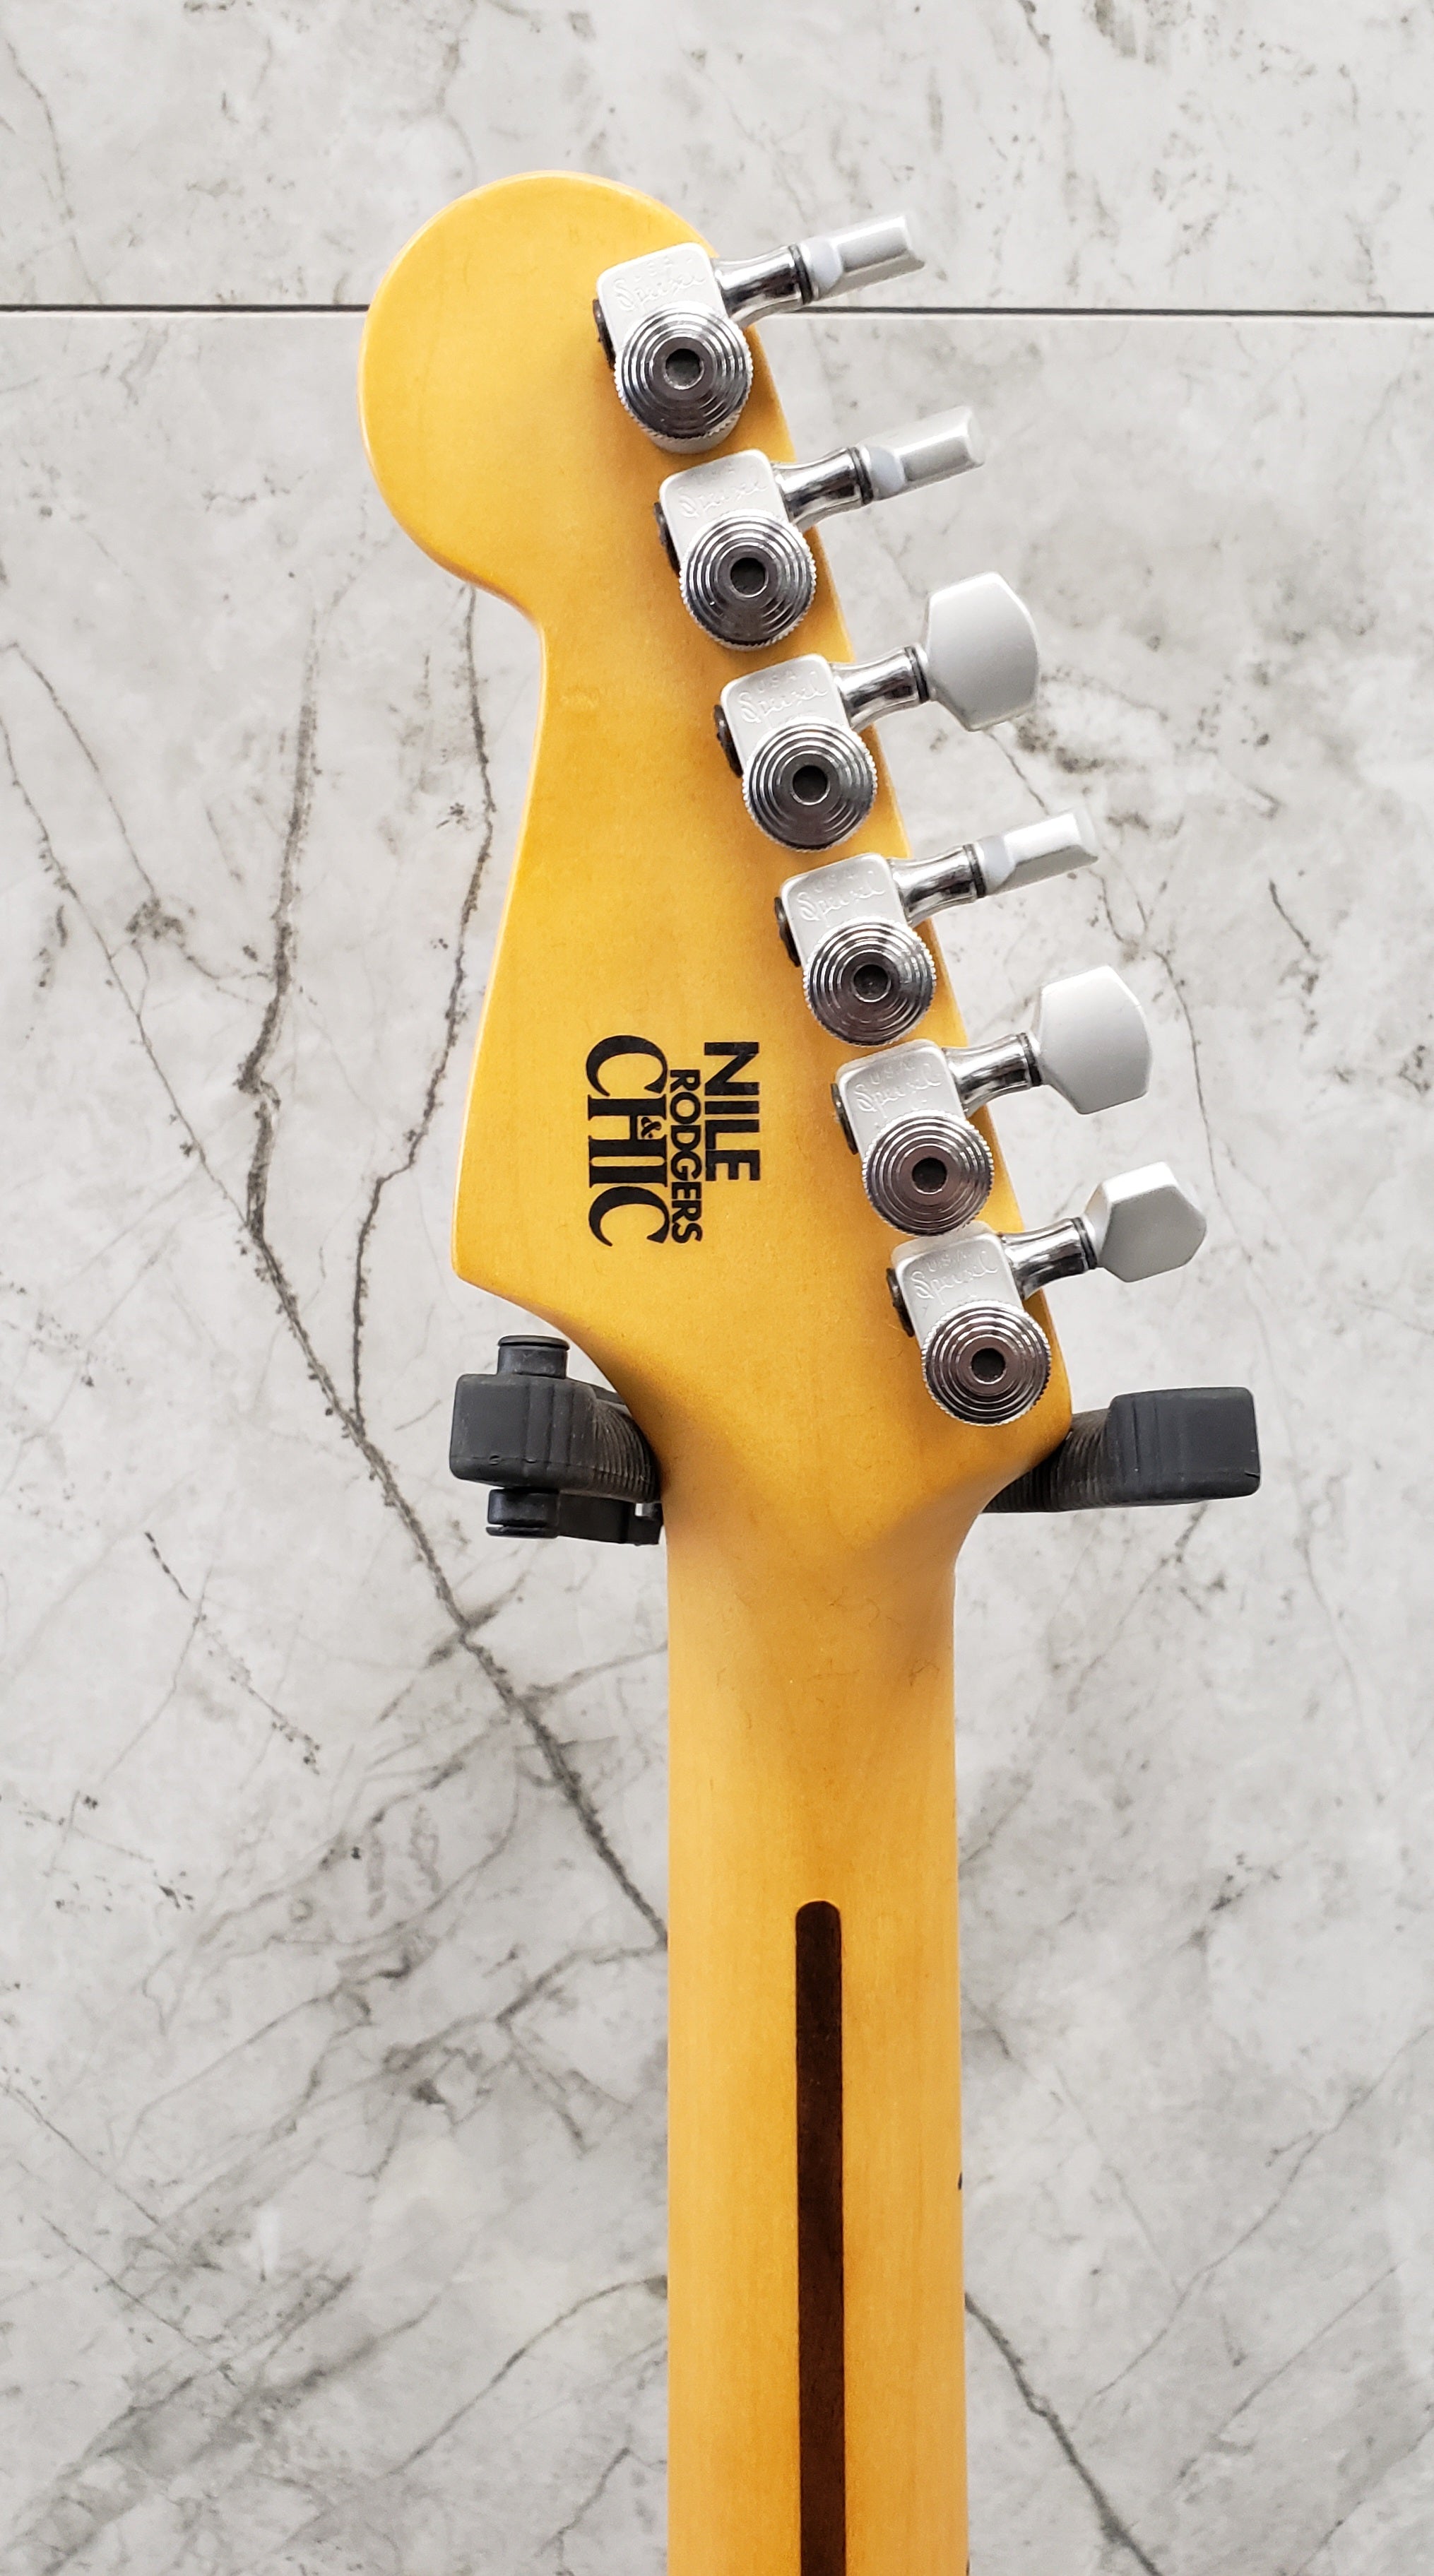 Fender Nile Rodgers Hitmaker Stratocaster Maple Fingerboard Olympic White MODEL 0115922705